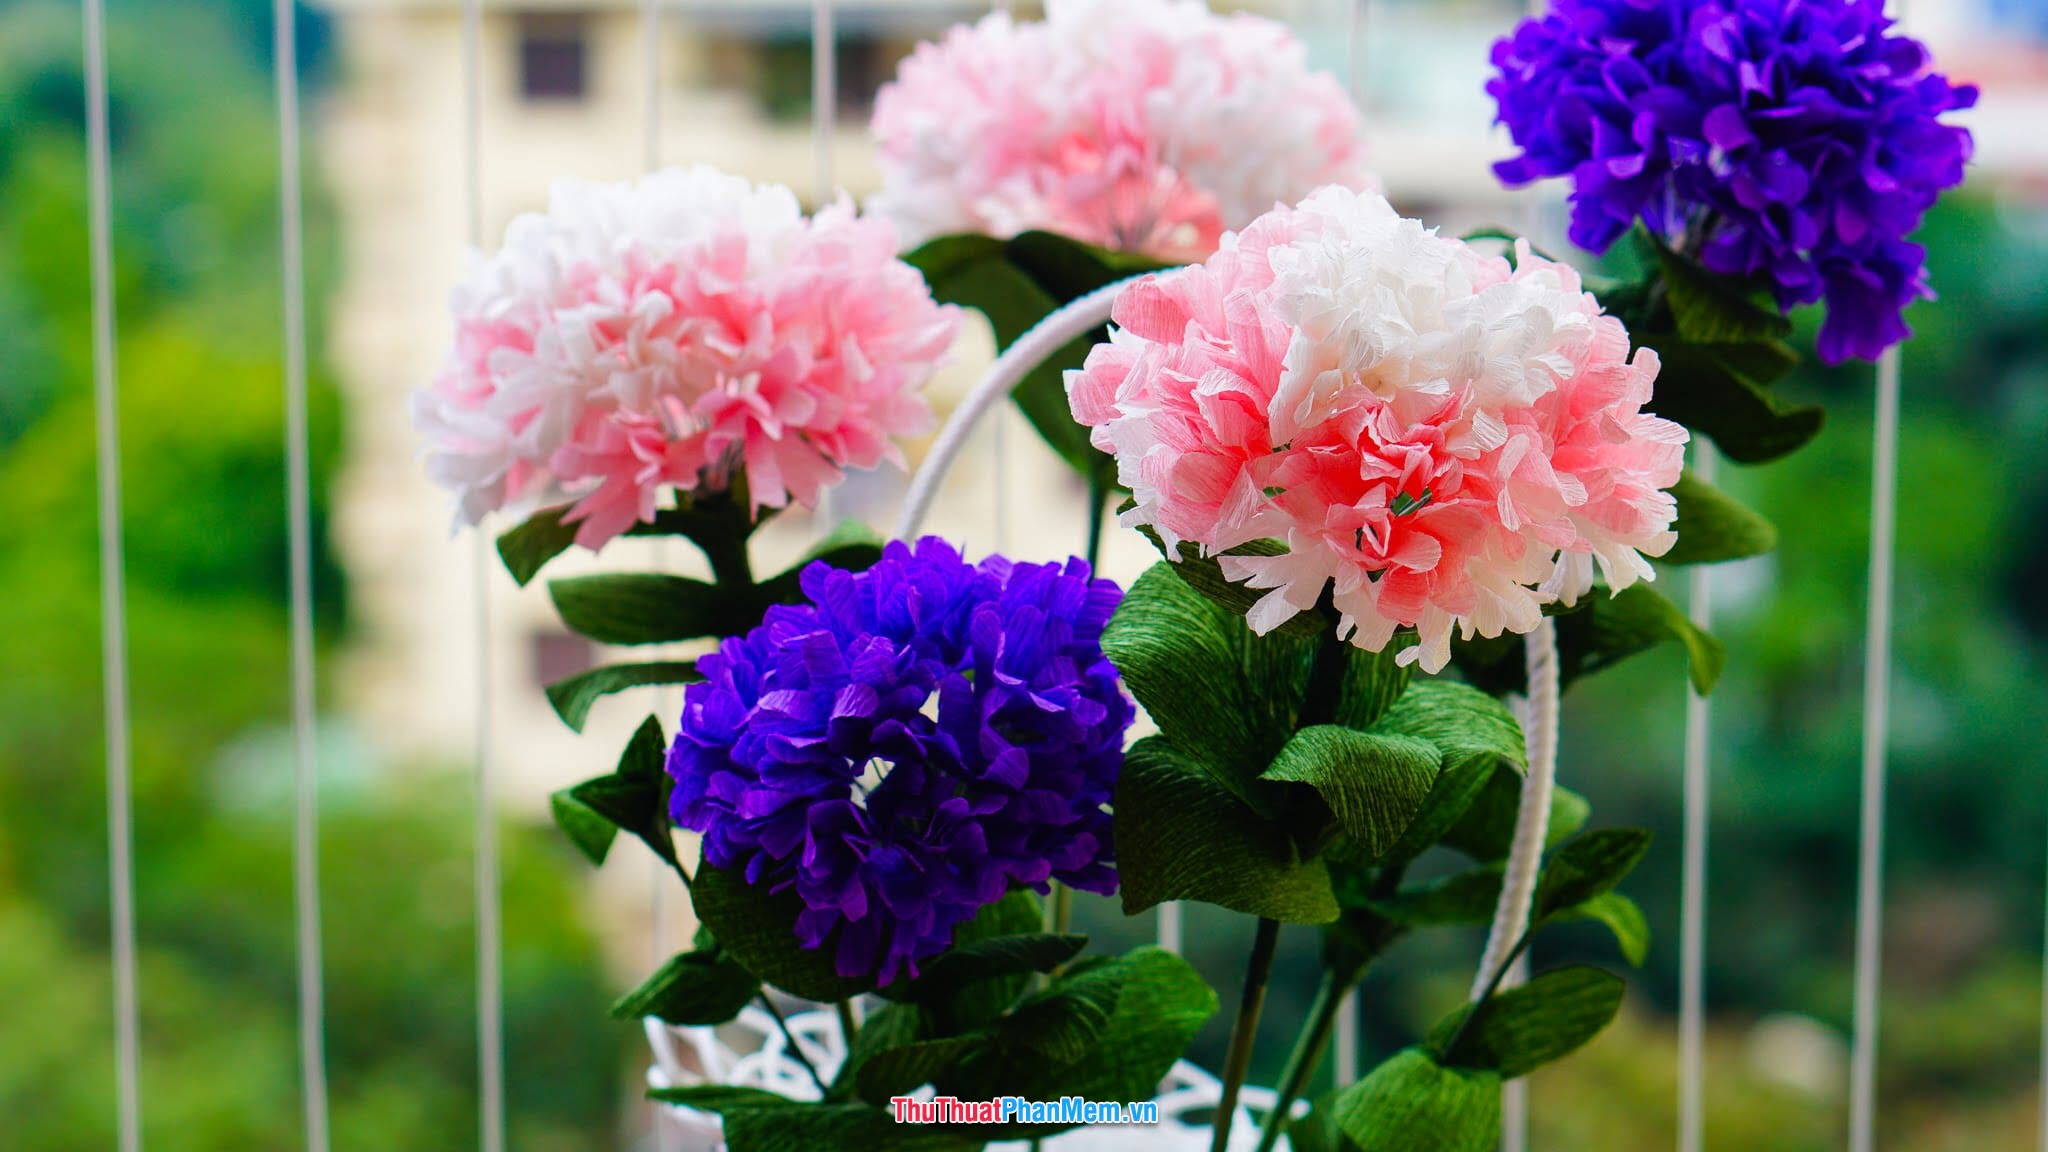 Hoa cẩm chướng hồng và tím tặng cho vợ và người yêu vào ngày quốc tế phụ nữ